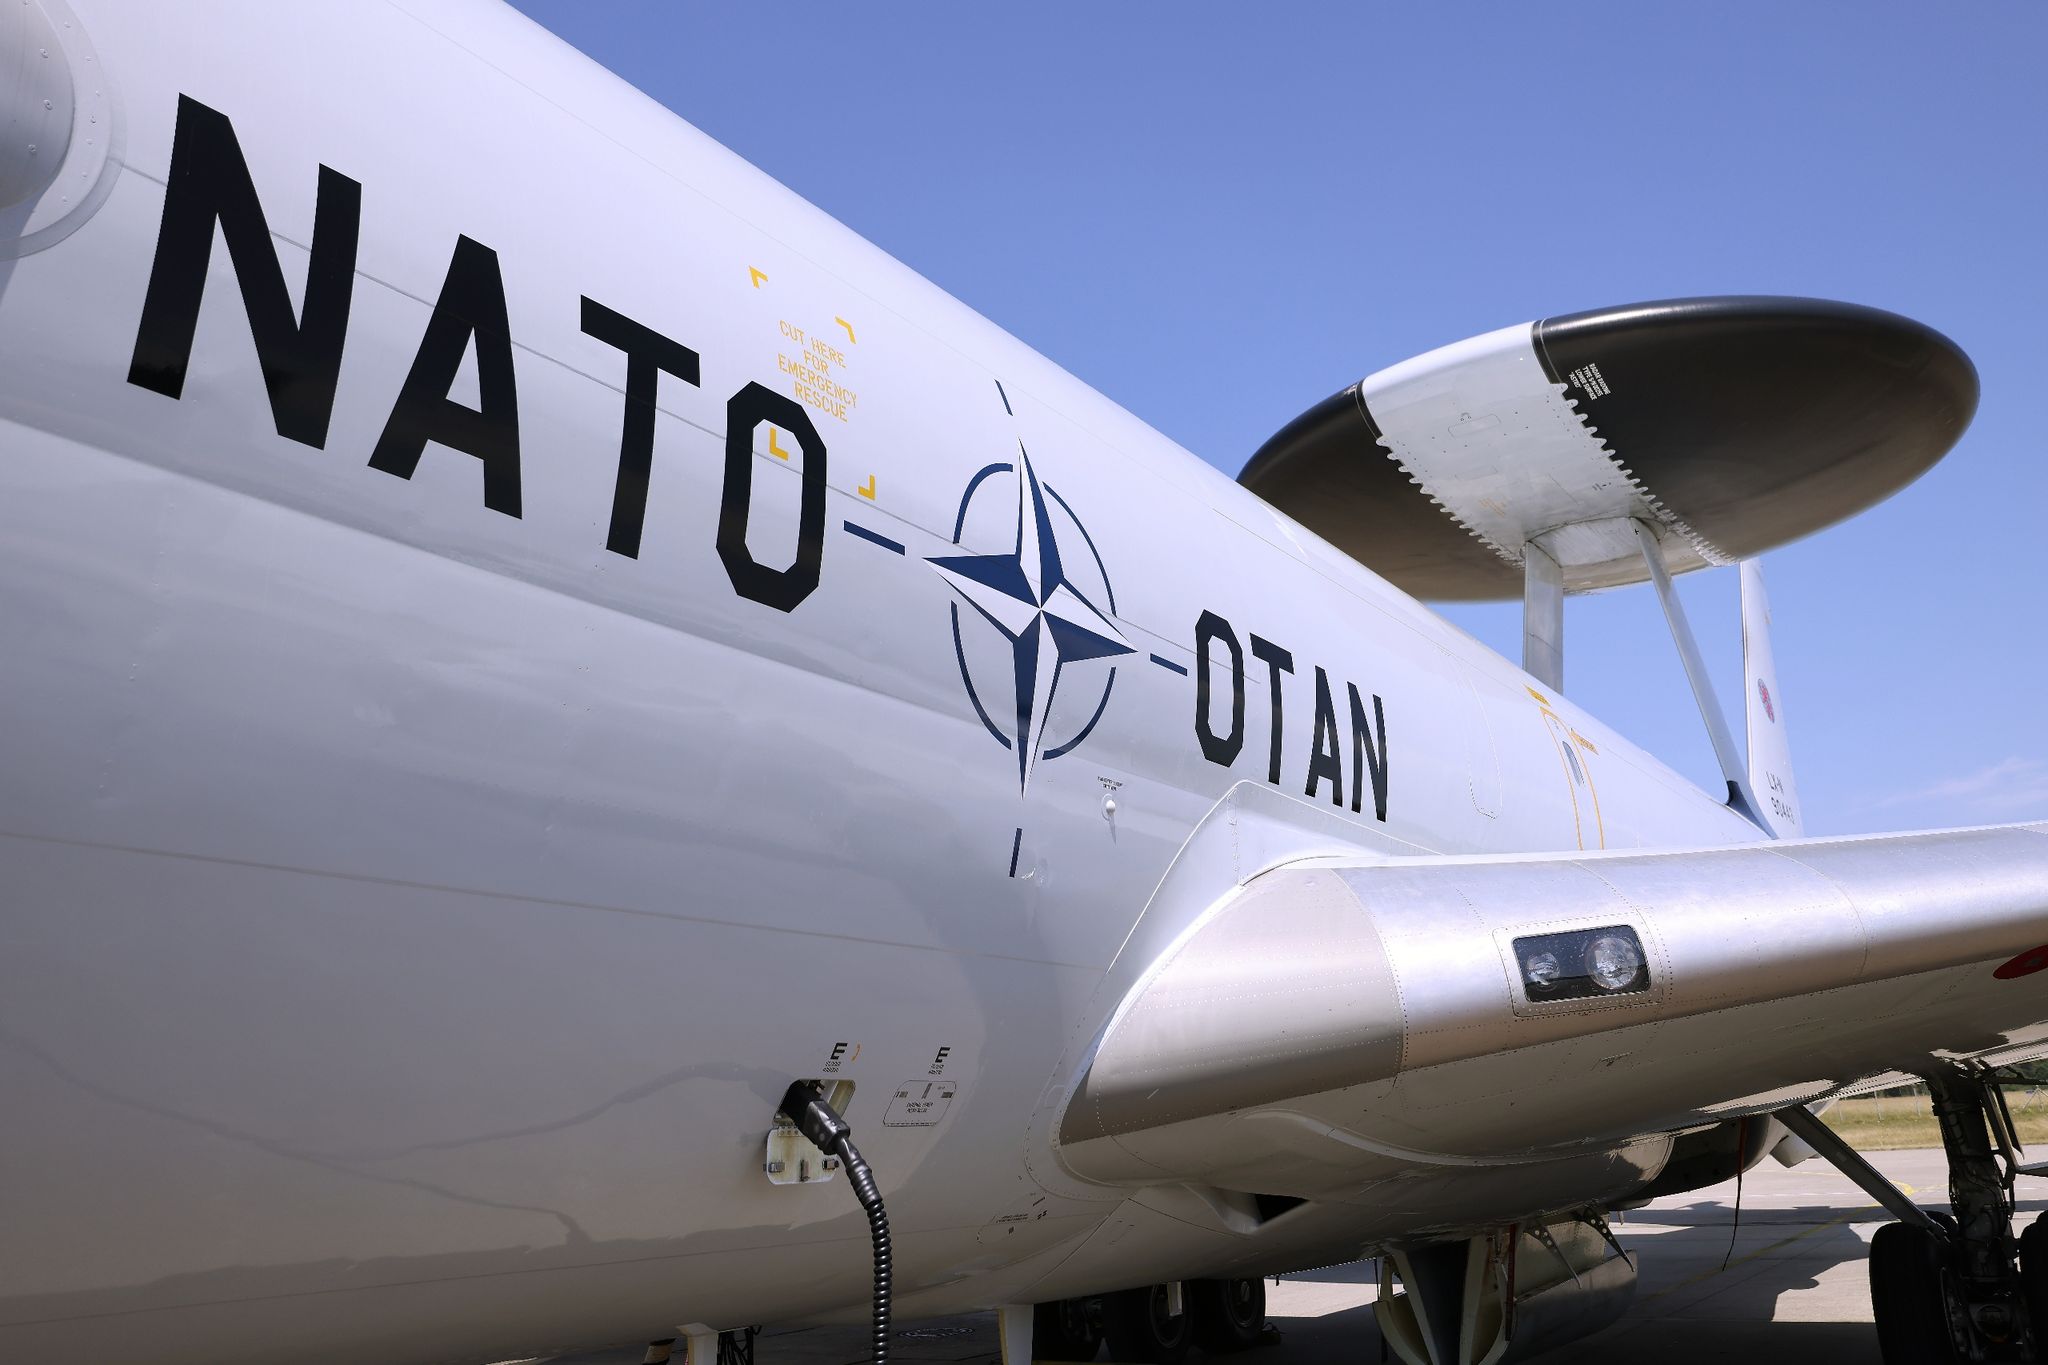 Abschreckung: Nato-Großmanöver mit 90.000 Soldaten